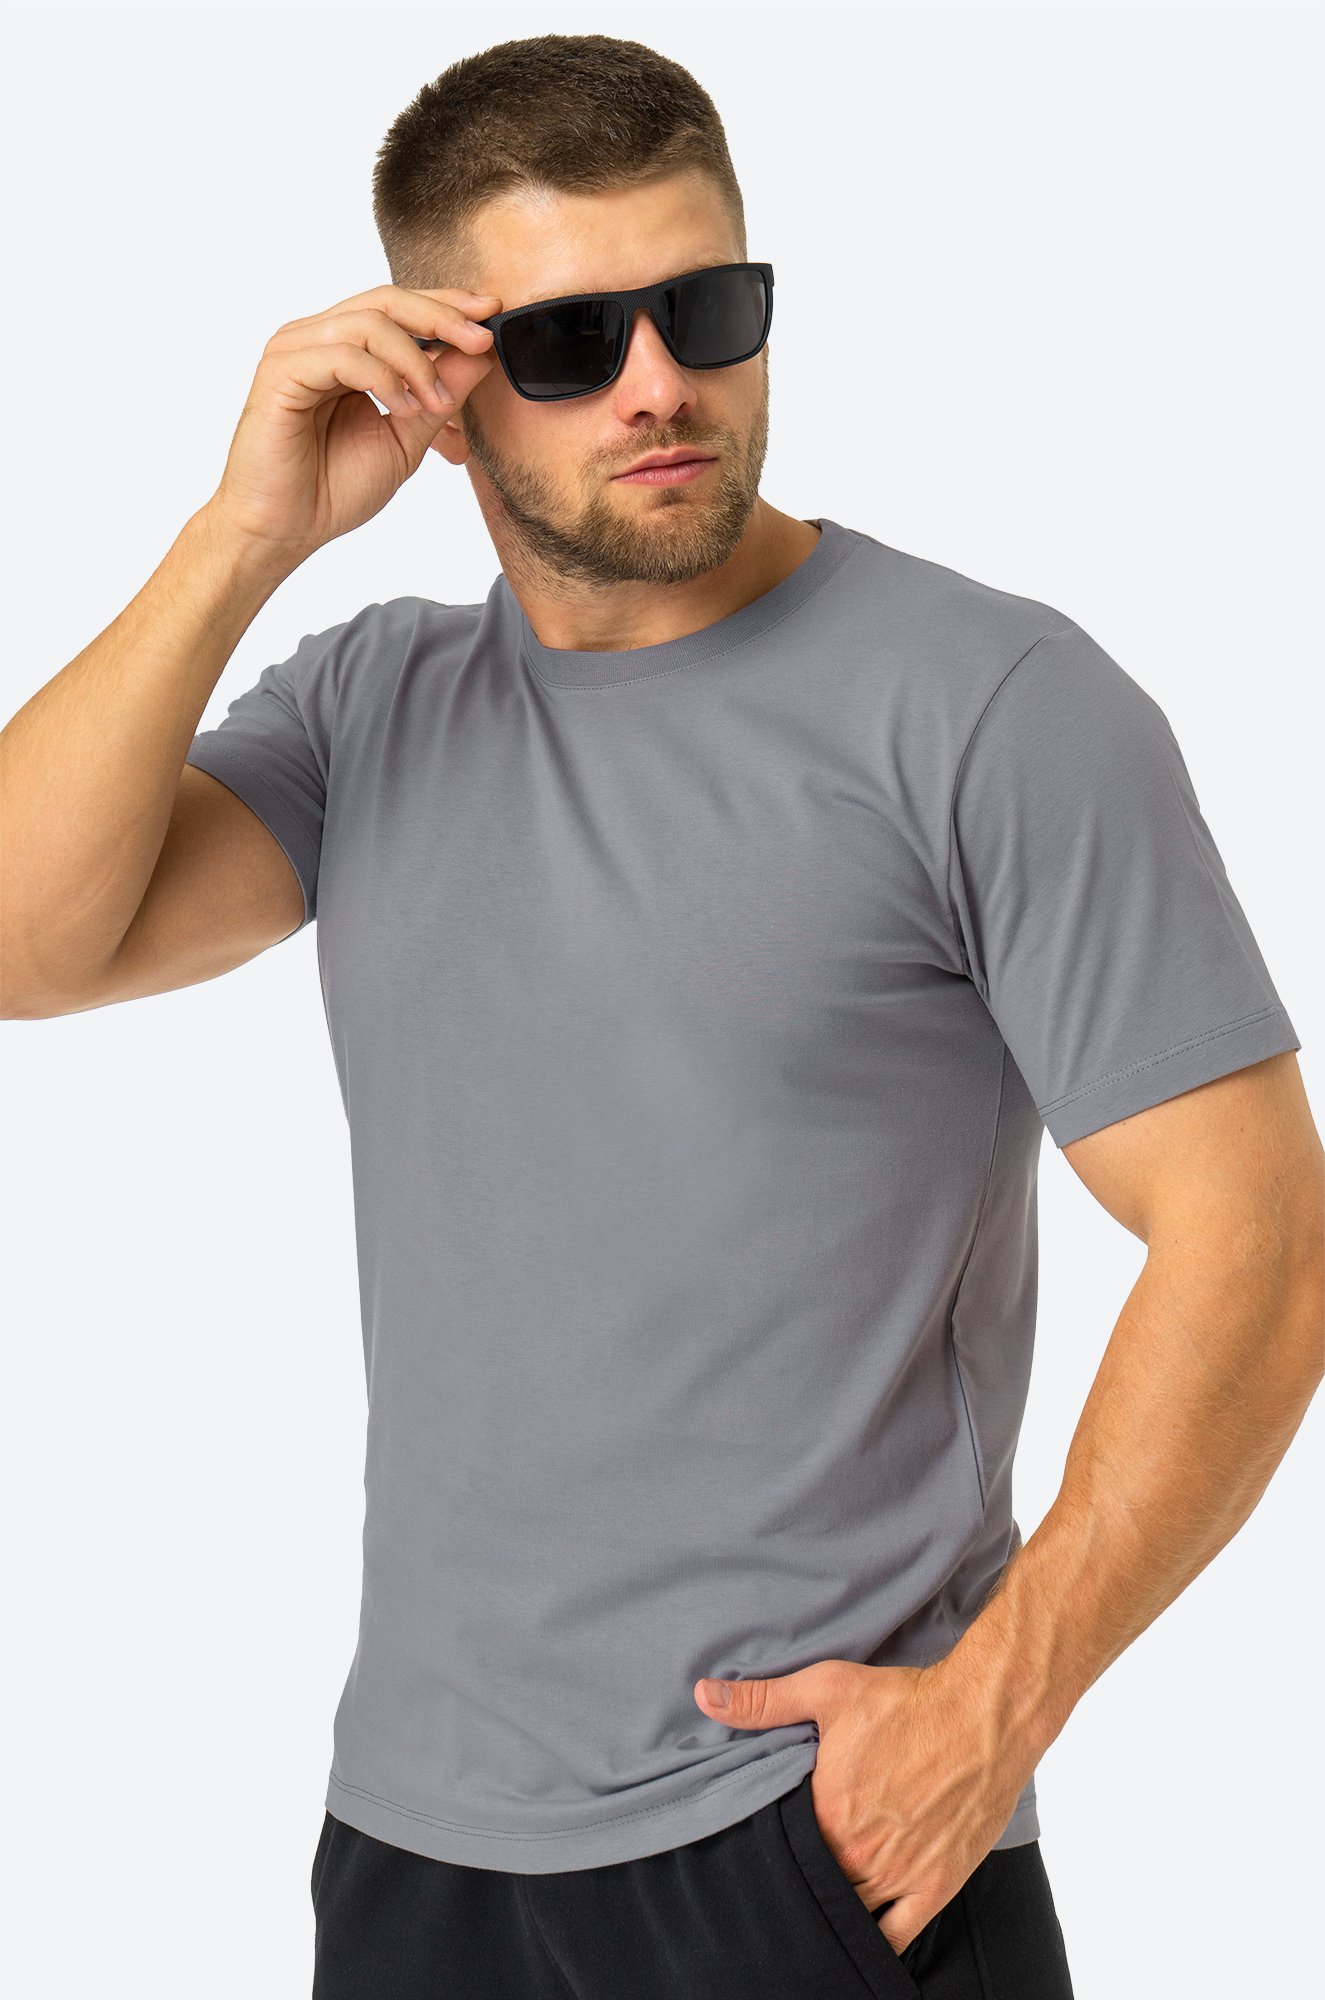 Мужская базовая футболка из хлопка 3 шт. Happy Fox